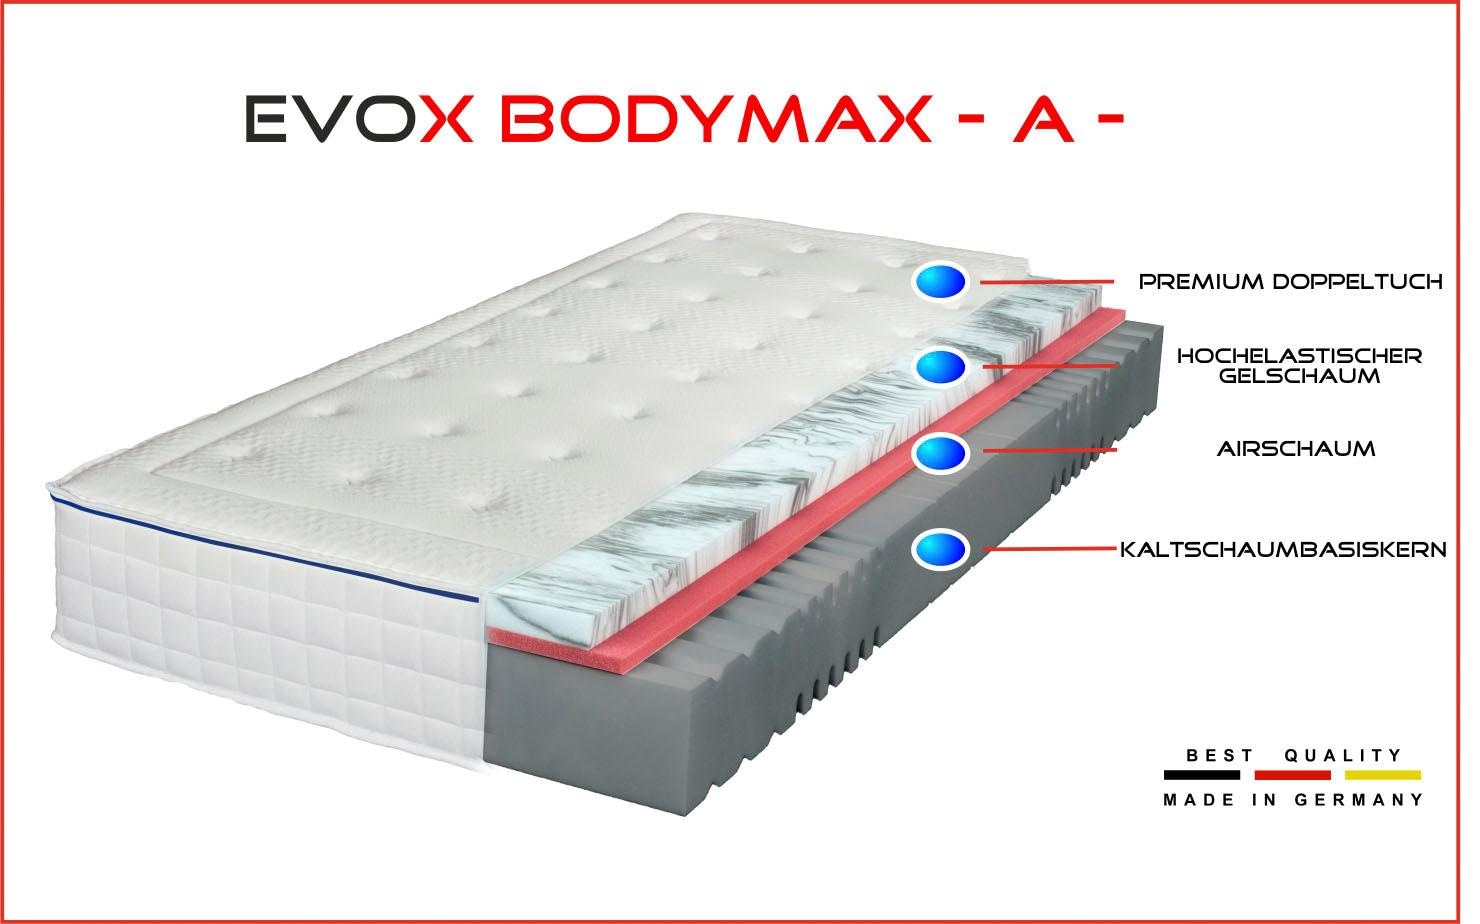 Breckle Northeim Gelschaummatratze »EVOX Bodymax A«, 24 cm hoch, Raumgewicht: 50 kg/m³, (1 St.), empfohlen Für Körpertypen mit eher schmaler Schulterpartie